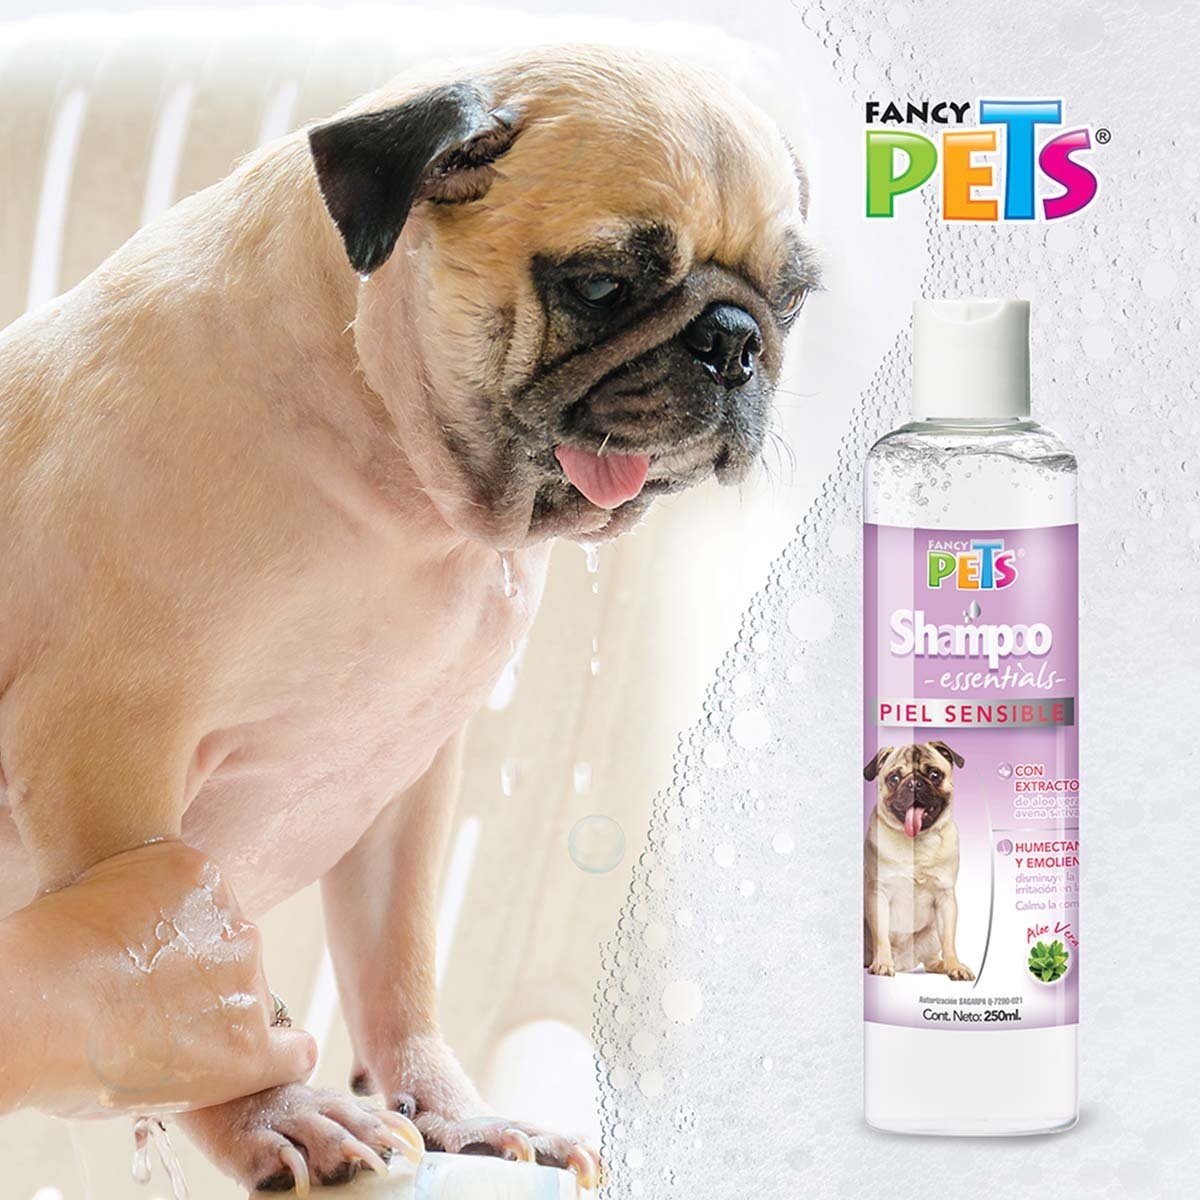 Shampoo Essentials Piel Sensible 250 Ml Fancy Pets Mod. Fl3969 para Perro